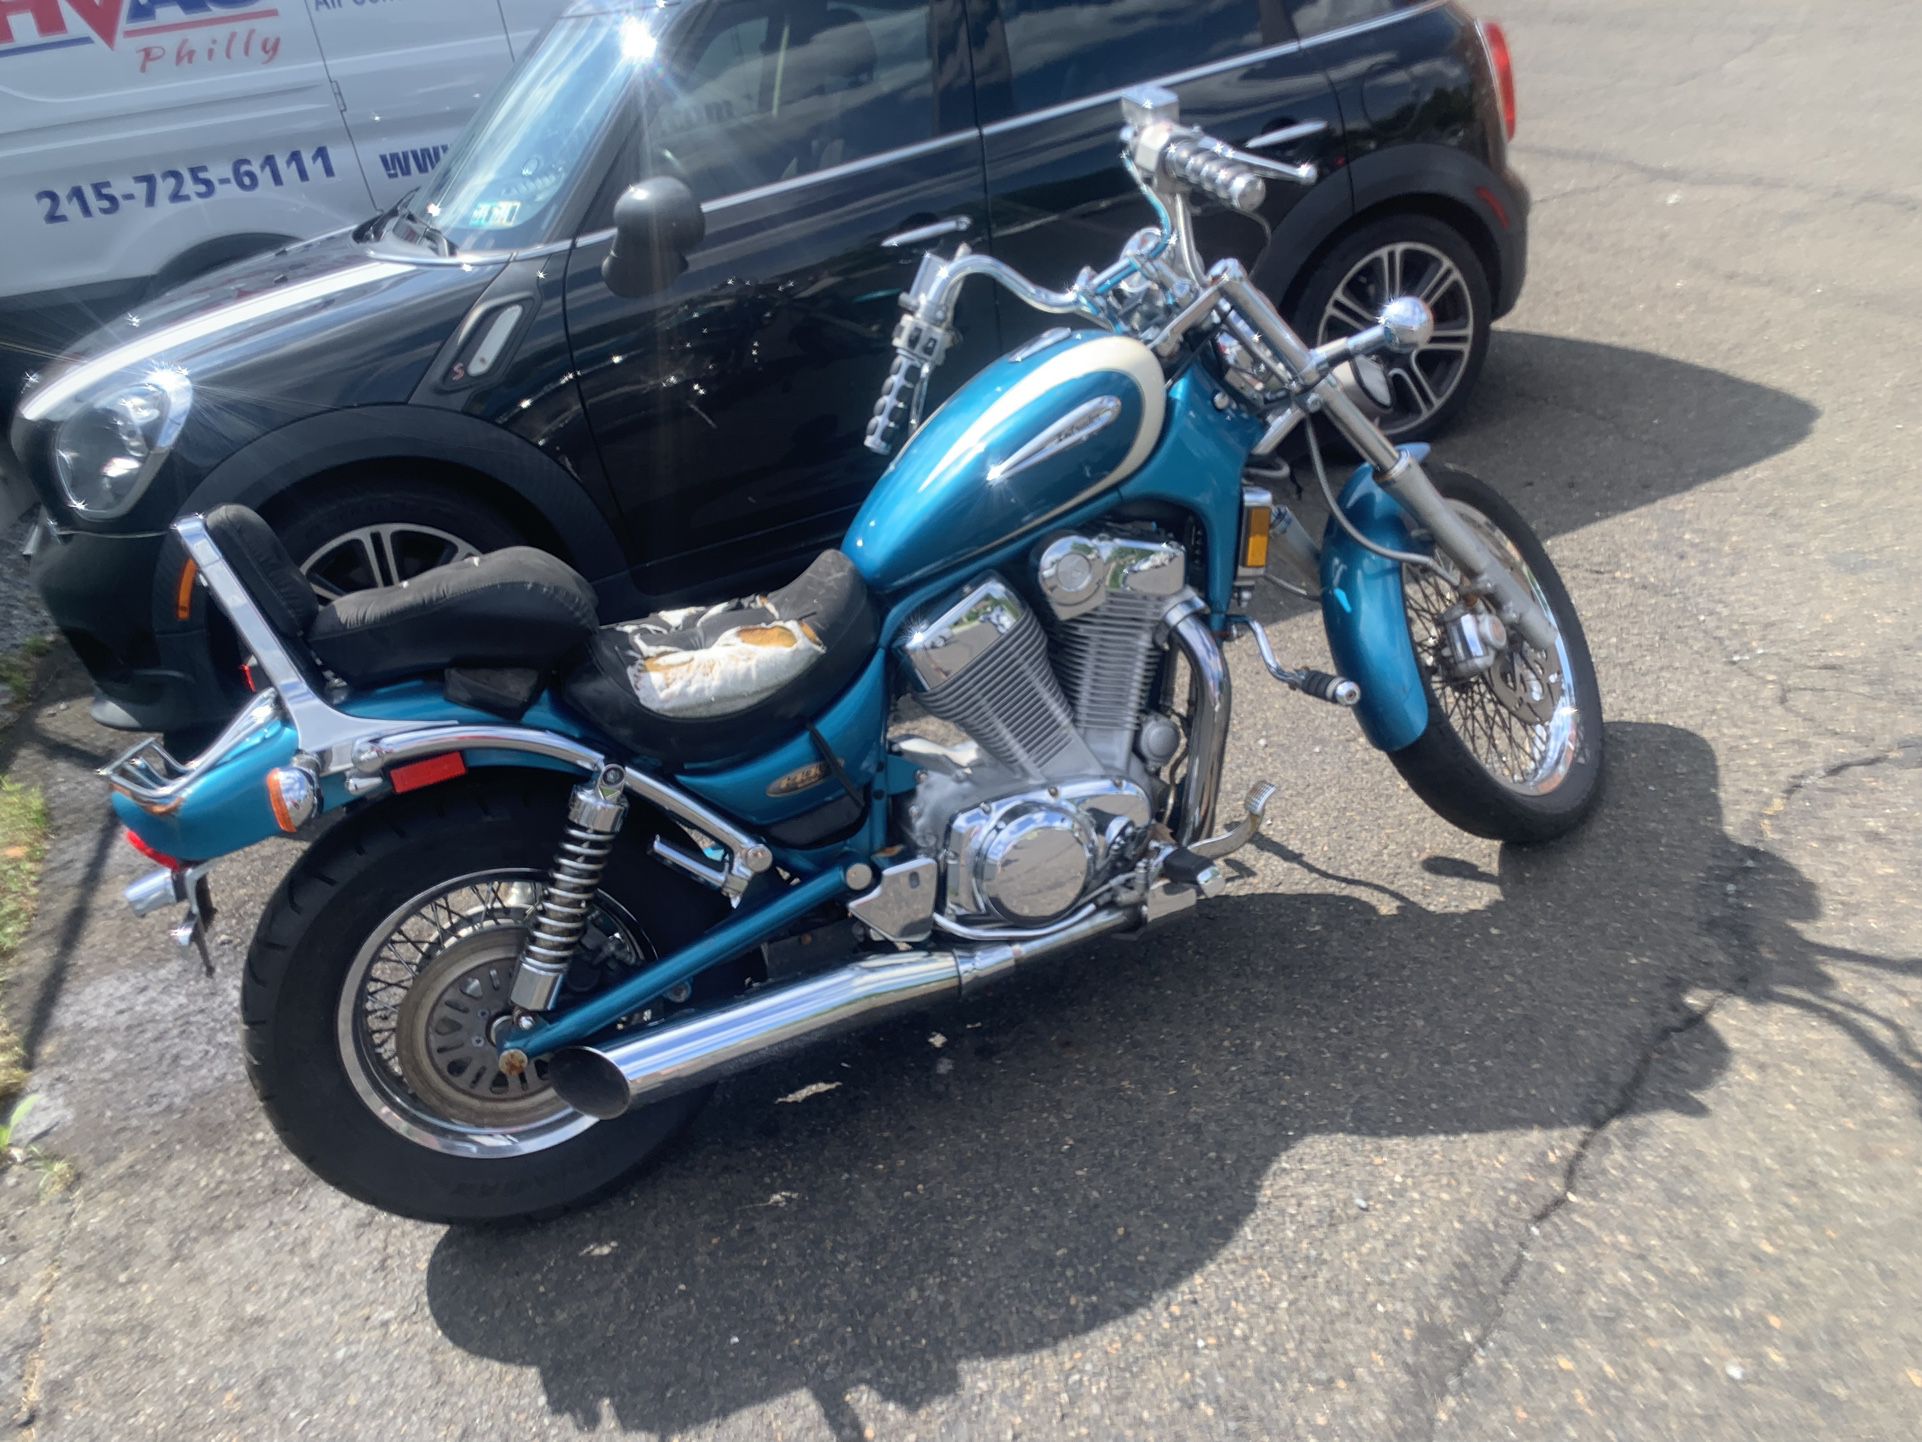 Suzuki intruder 1400 cc cruiser motorcycle for Sale in Norristown, PA -  OfferUp